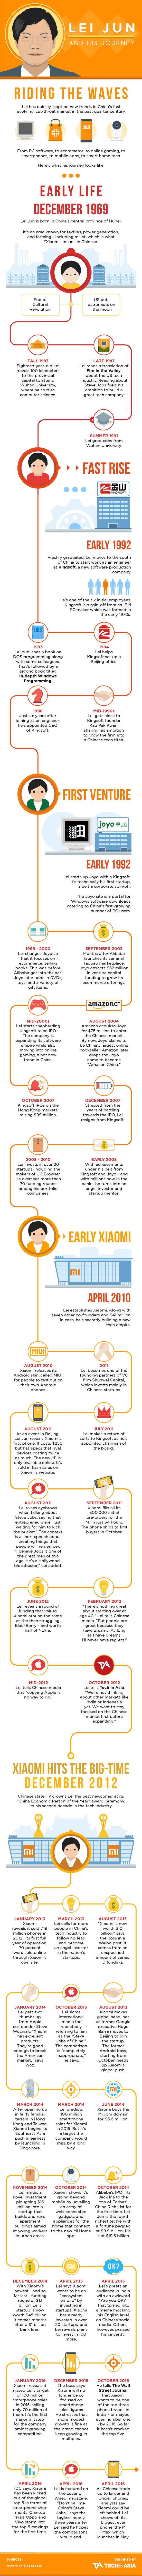 xiaomi infographic